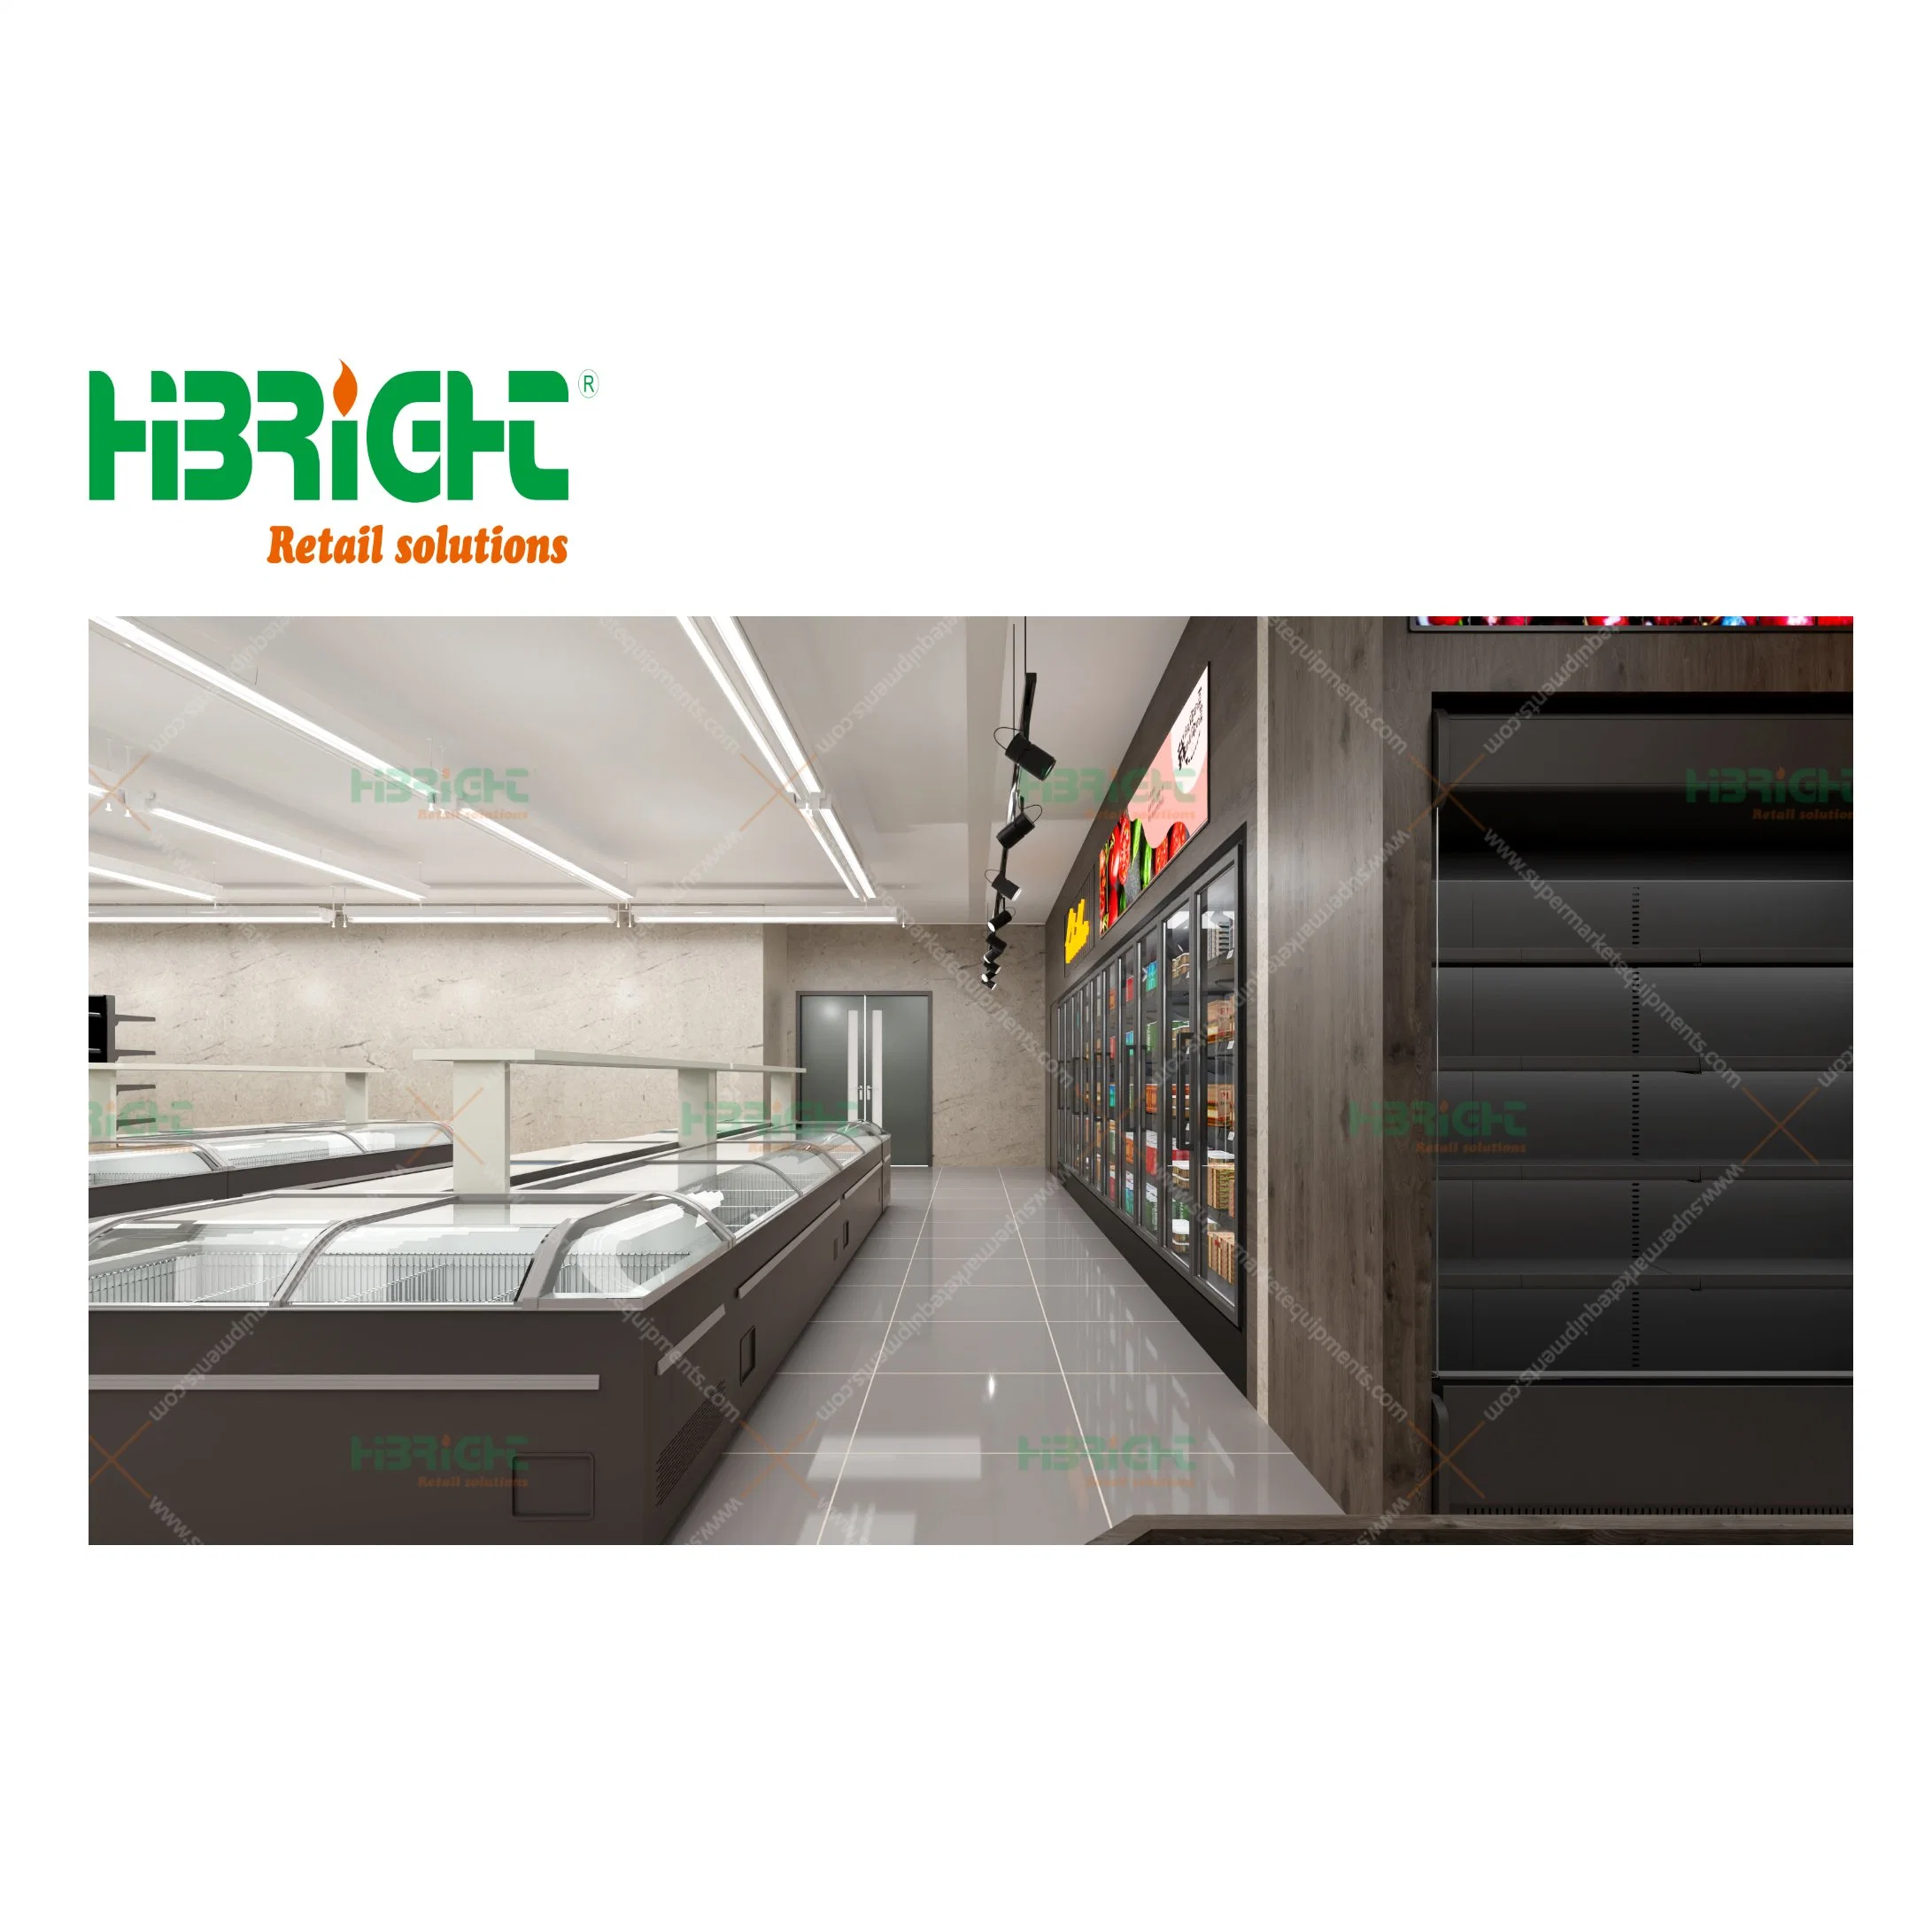 Highbright Display Kühlerregale Benutzerdefinierte Logo Größe Layout Design Supermarkt Ausrüstung